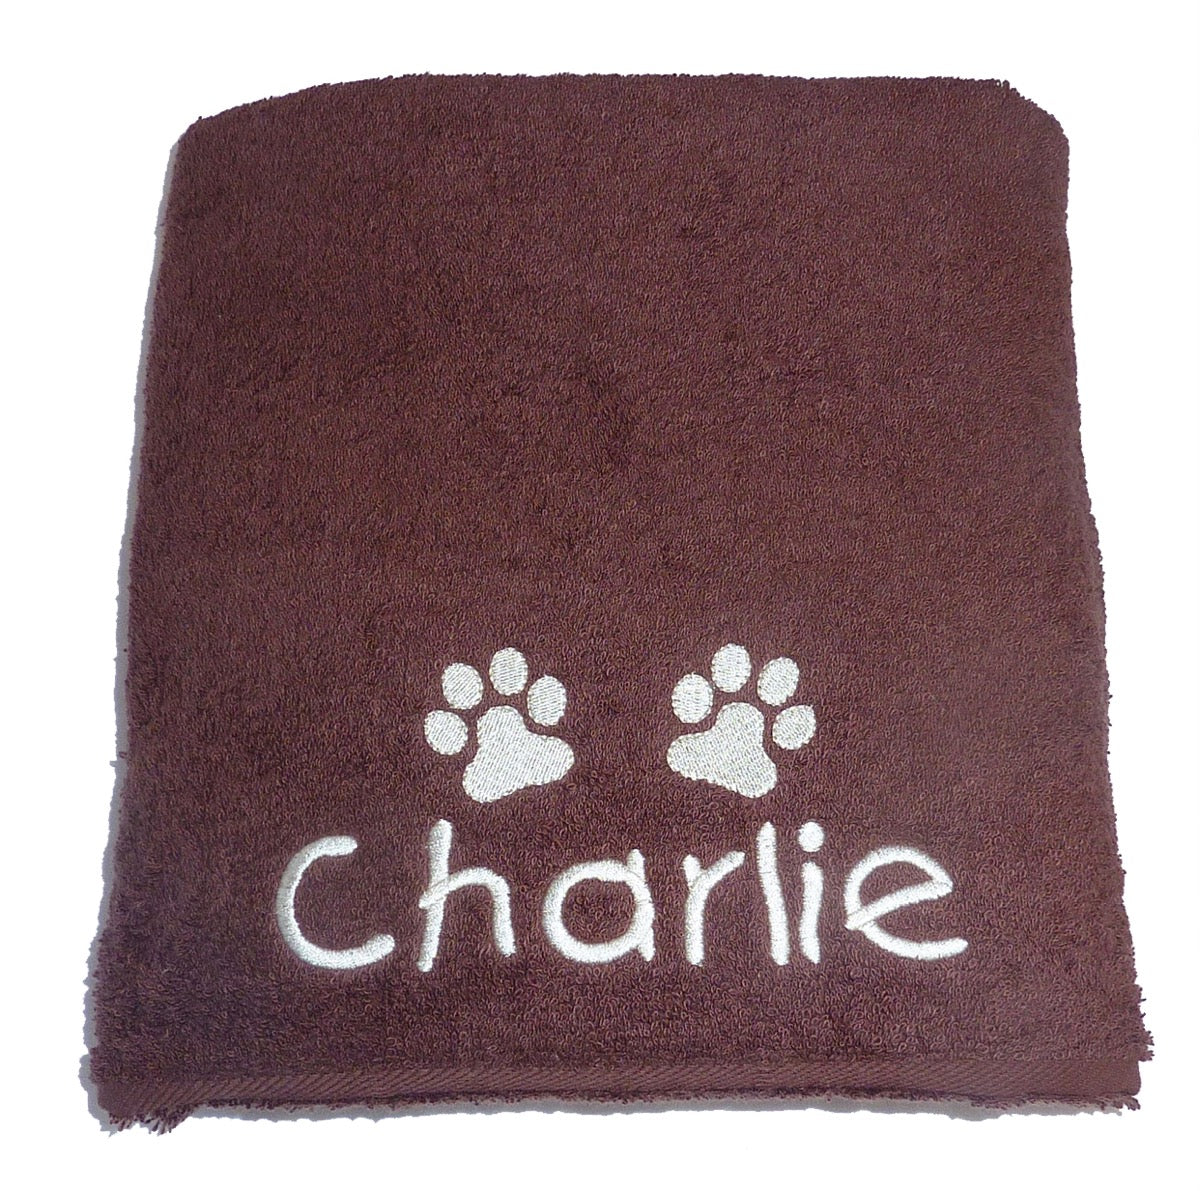 Personalised Pet Towel Chocolate